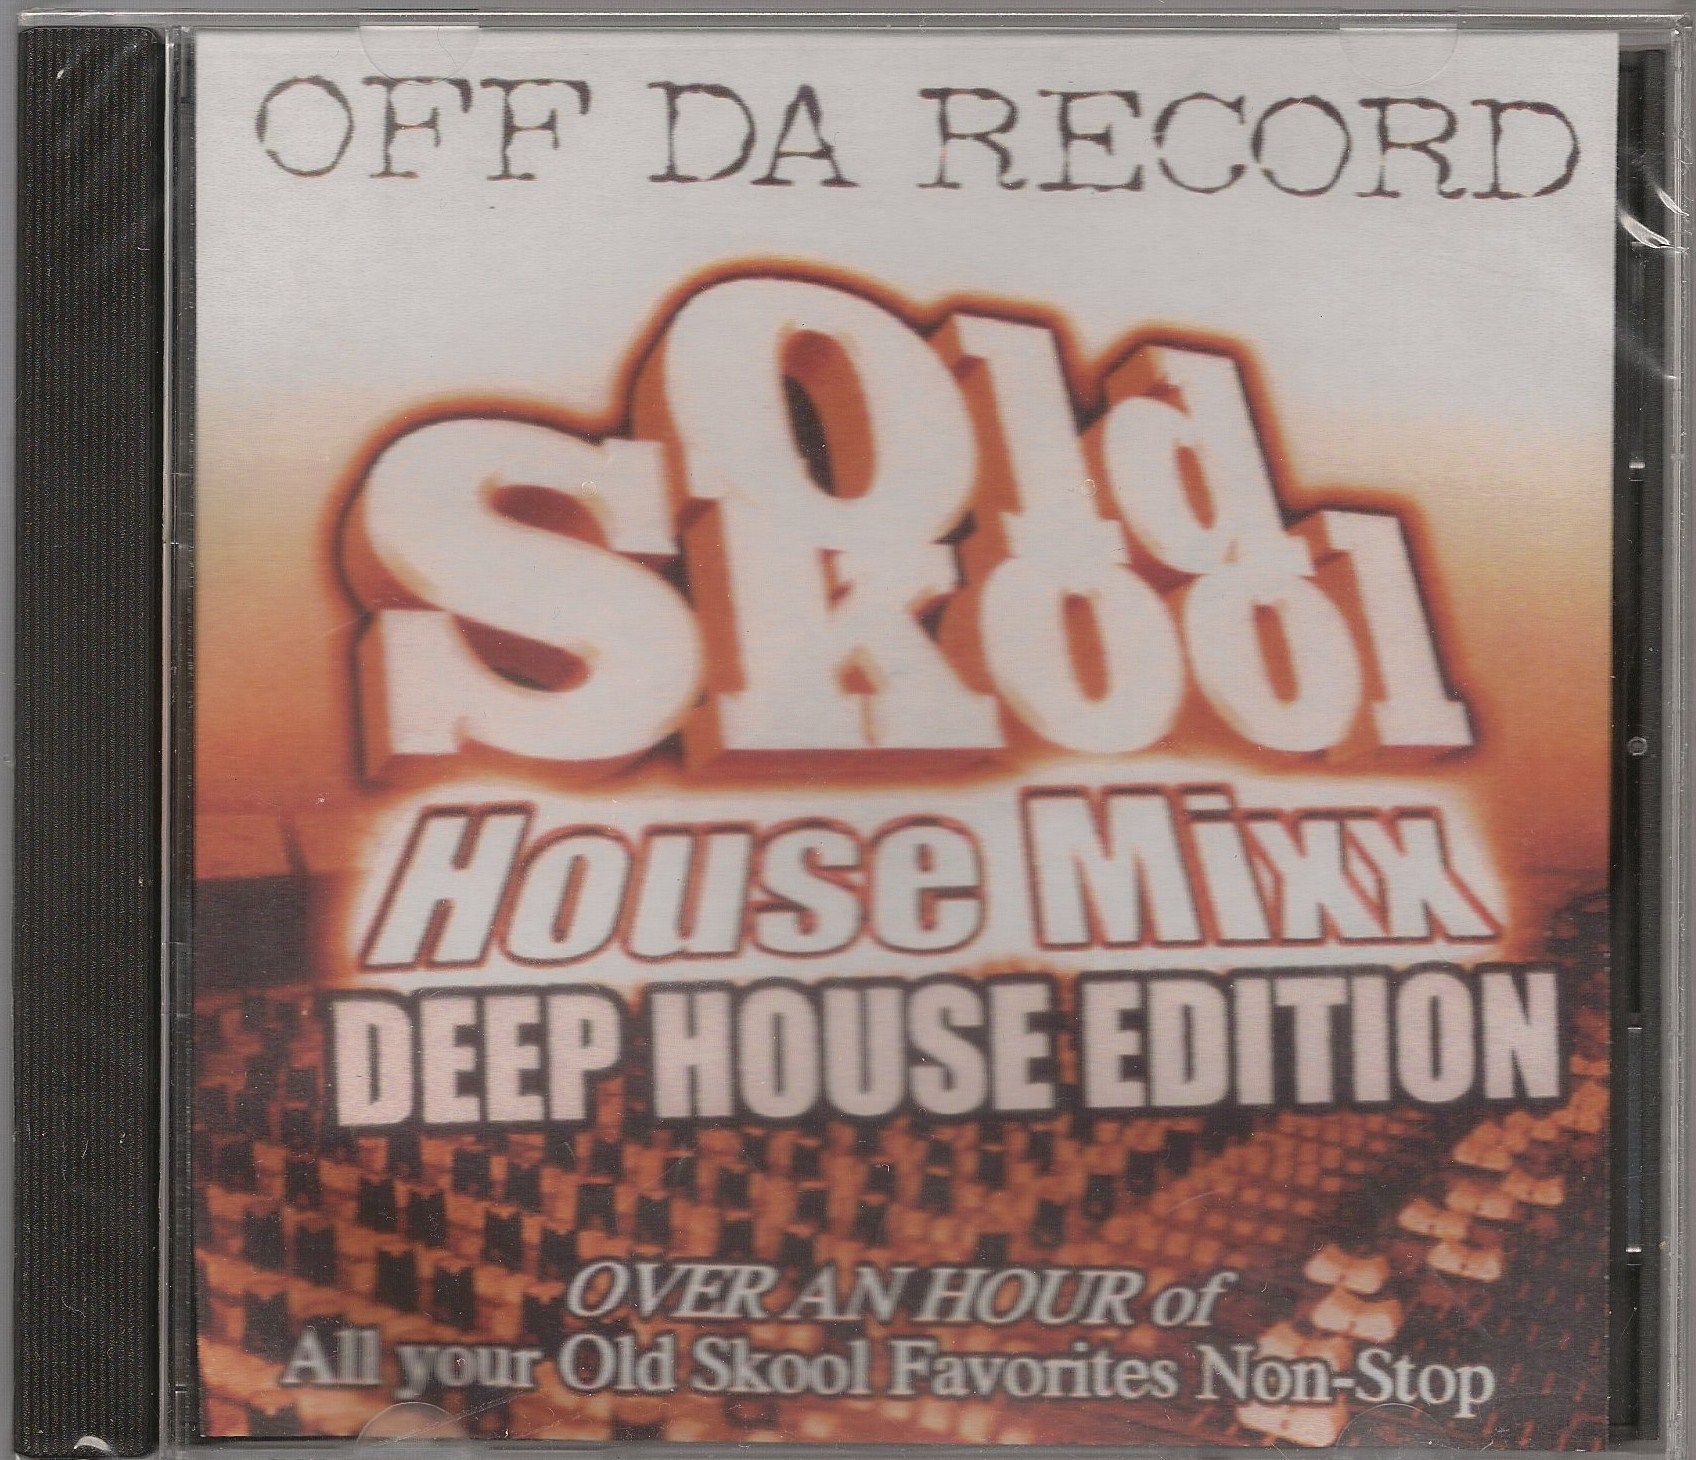 DJ APOLLO - OLD SKOOL HOUSE MIXX DEEP HOUSE EDITION